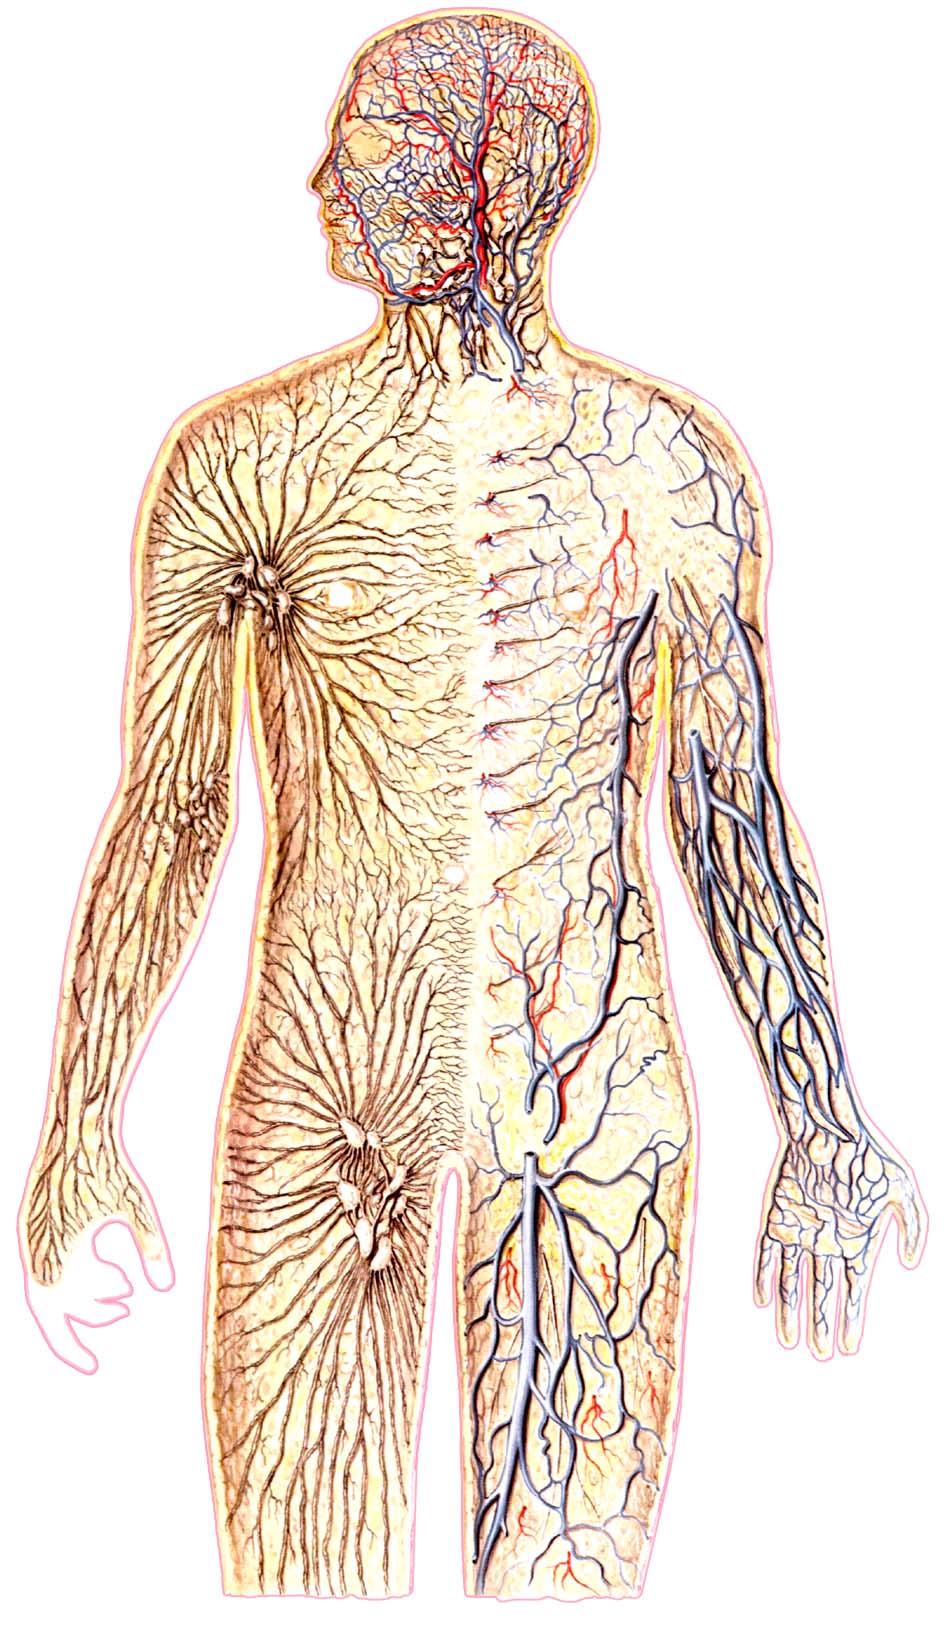 Нервы лимфатических сосудов